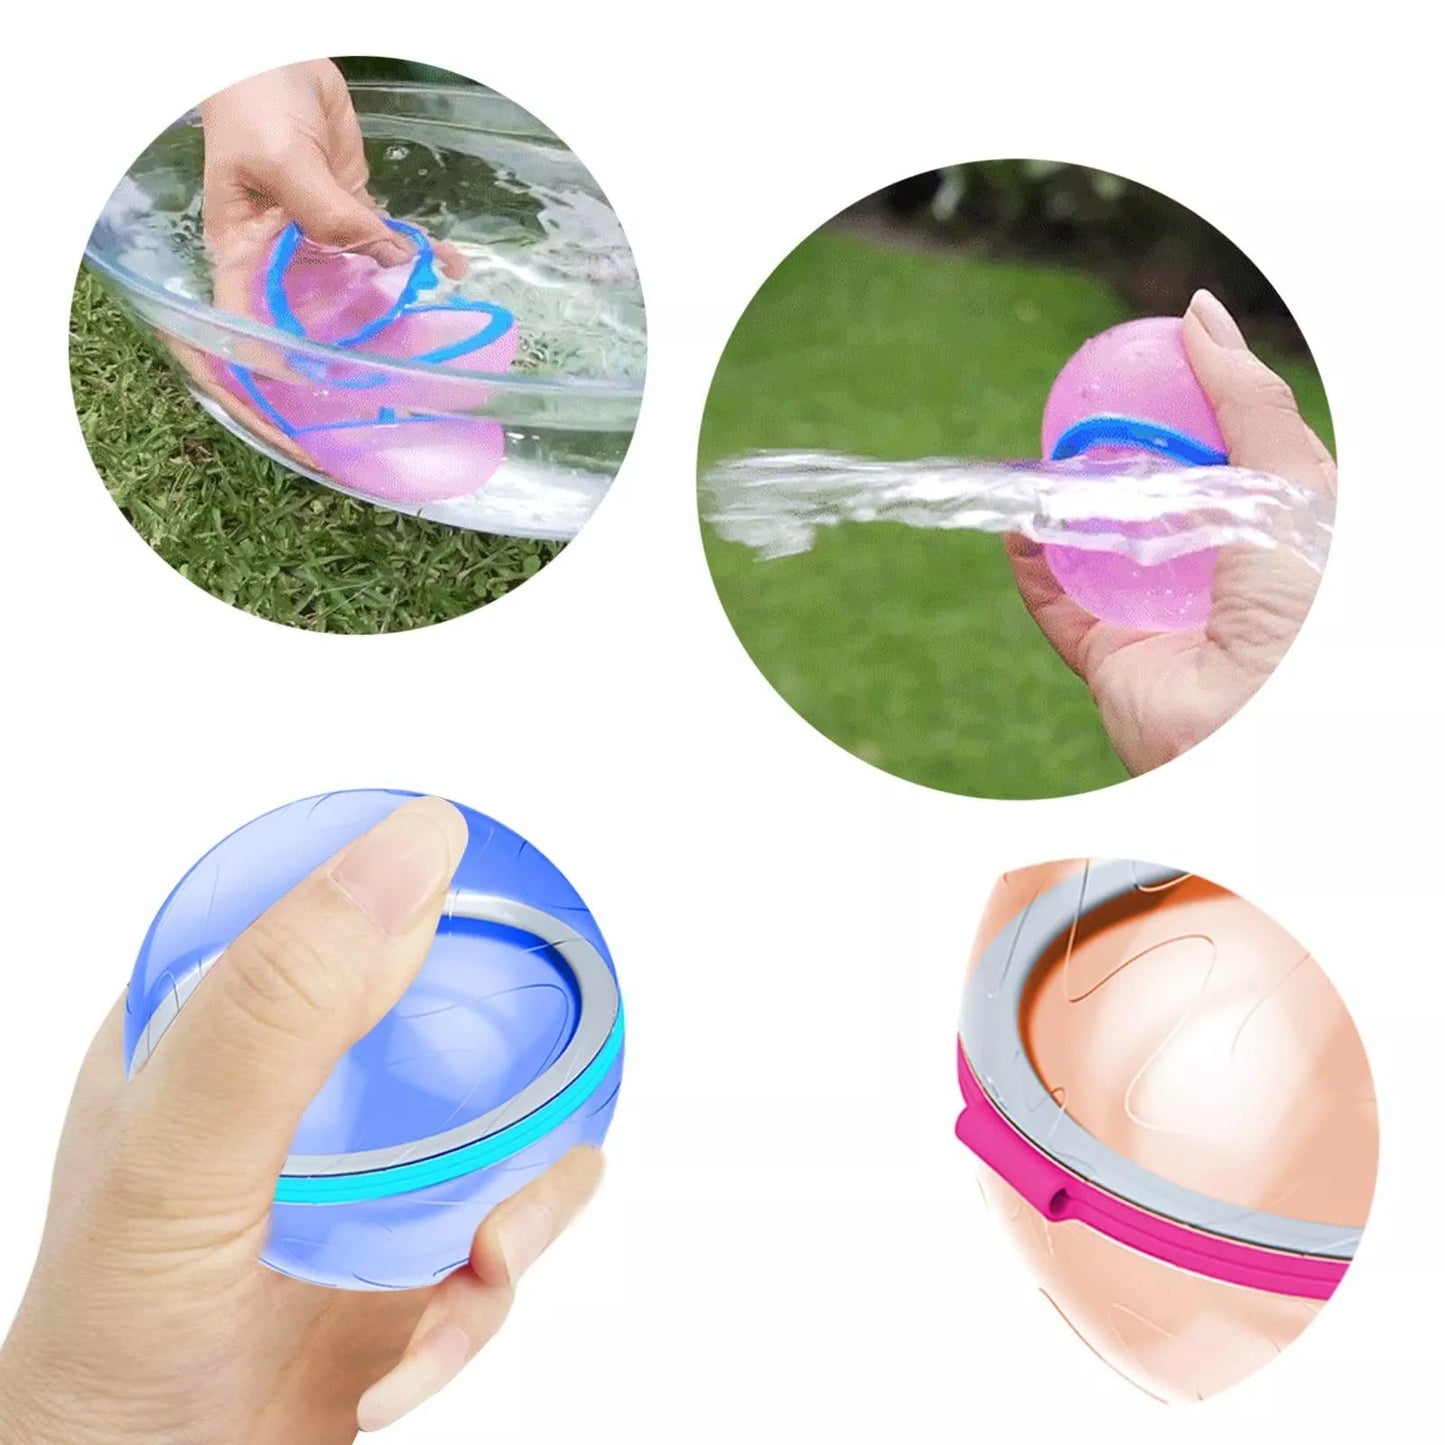 Reusable Water Balloon - Quick Fill for Endless Fun